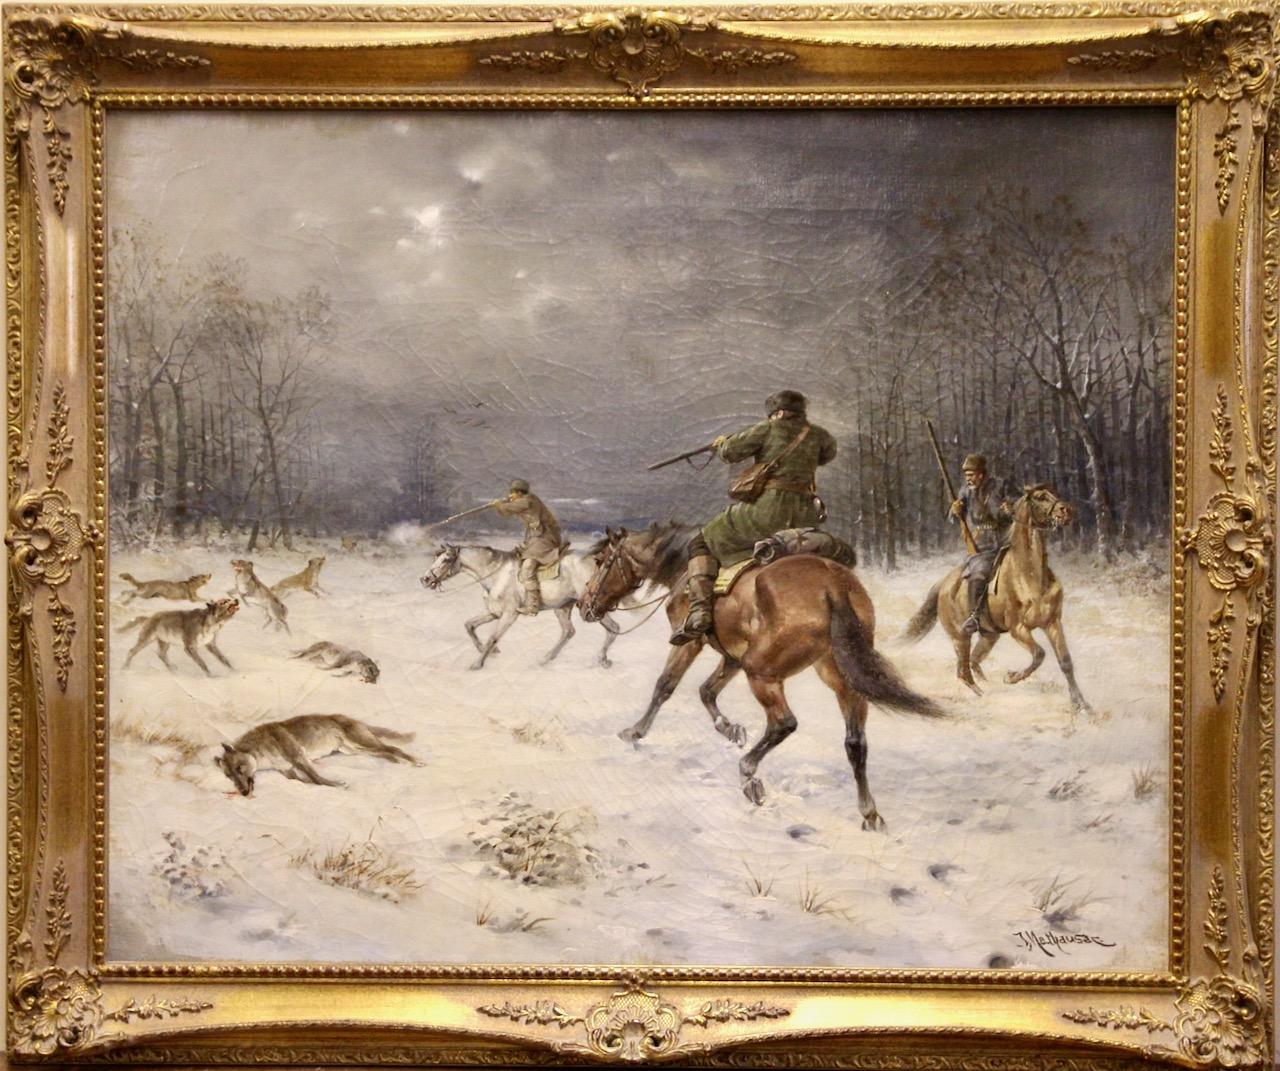 Josef Mathauser, 19e siècle, scène de chasse dramatique dans une forêt hivernale

Peinture à l'huile décorative du célèbre artiste tchèque Josef Mathauser. Signé en bas à droite.
Magnifiquement encadré.

Dimensions avec cadre : 80.5 cm x 67,5